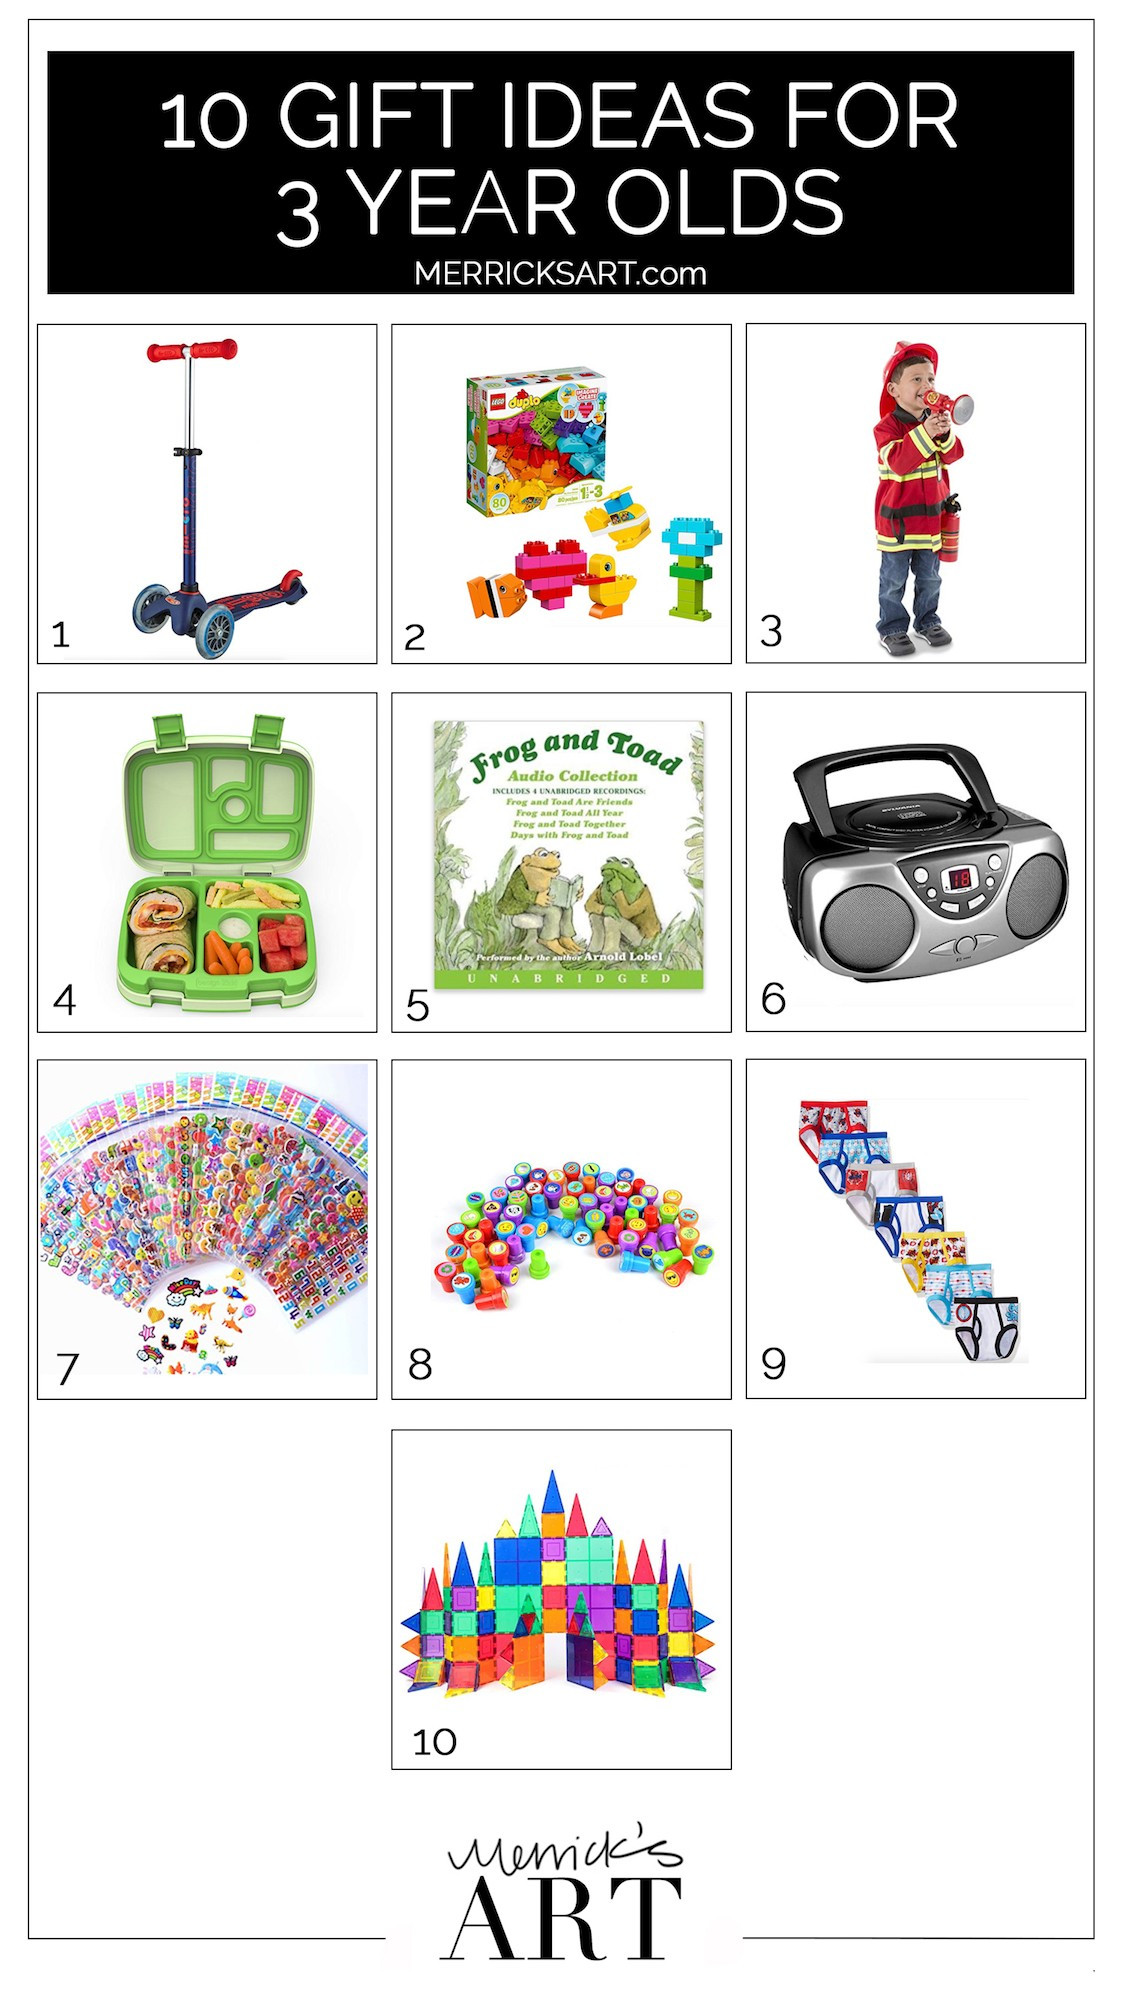 Birthday Gift Ideas For 3 Year Old Boy
 10 Birthday Gift Ideas for a 3 Year Old Boy